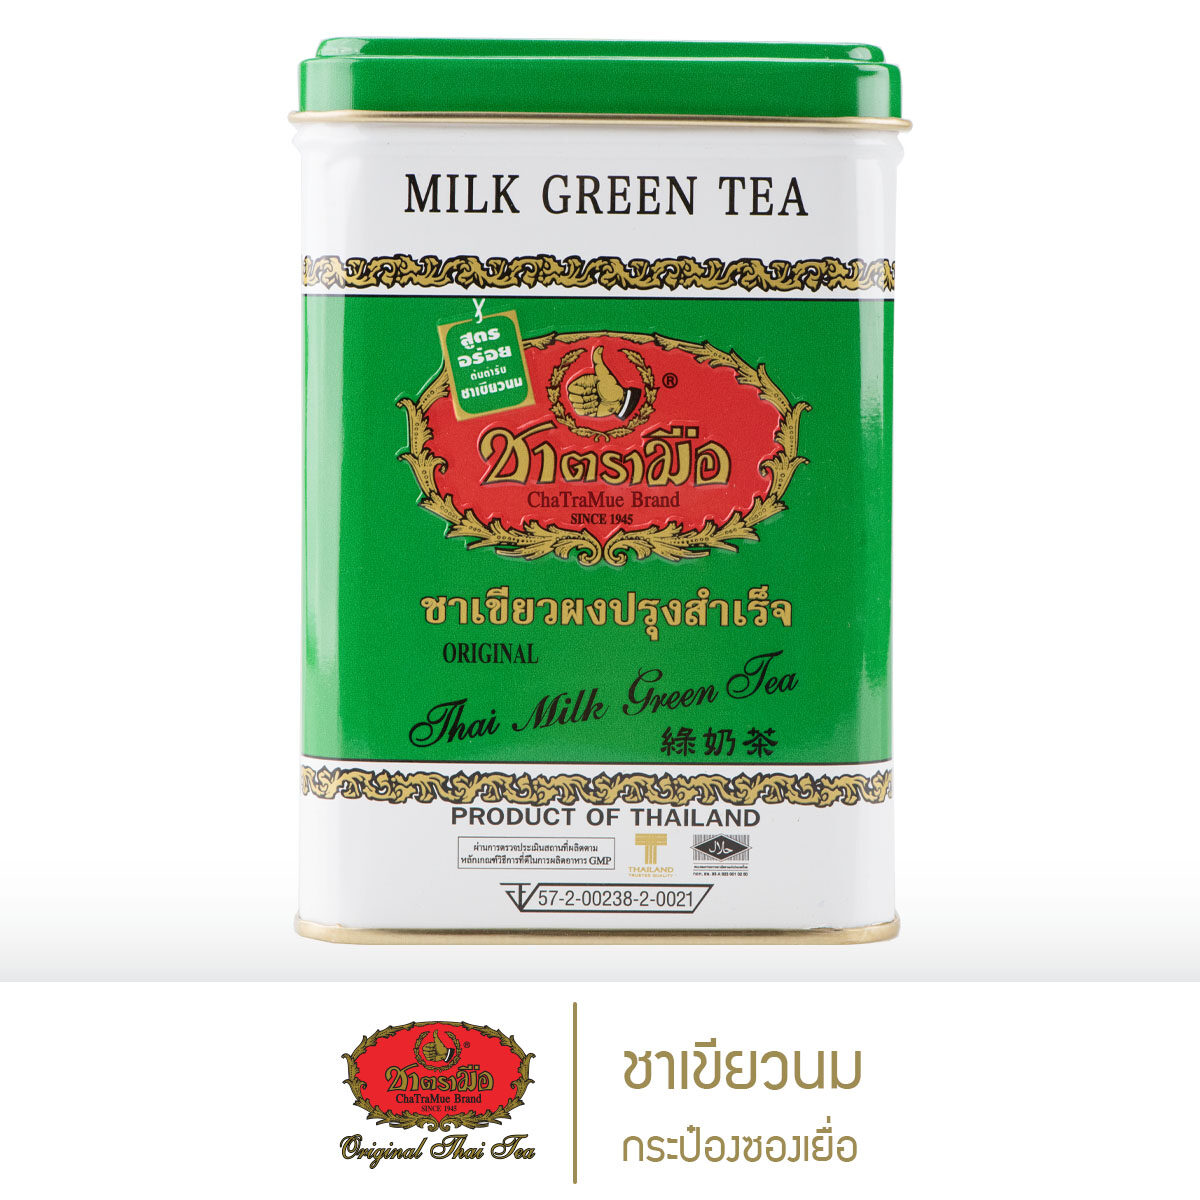 ชาตรามือ ชาเขียวนม กระป๋องซองเยื่อ (MILK GREEN TEA - SACHET PACKED IN CAN)